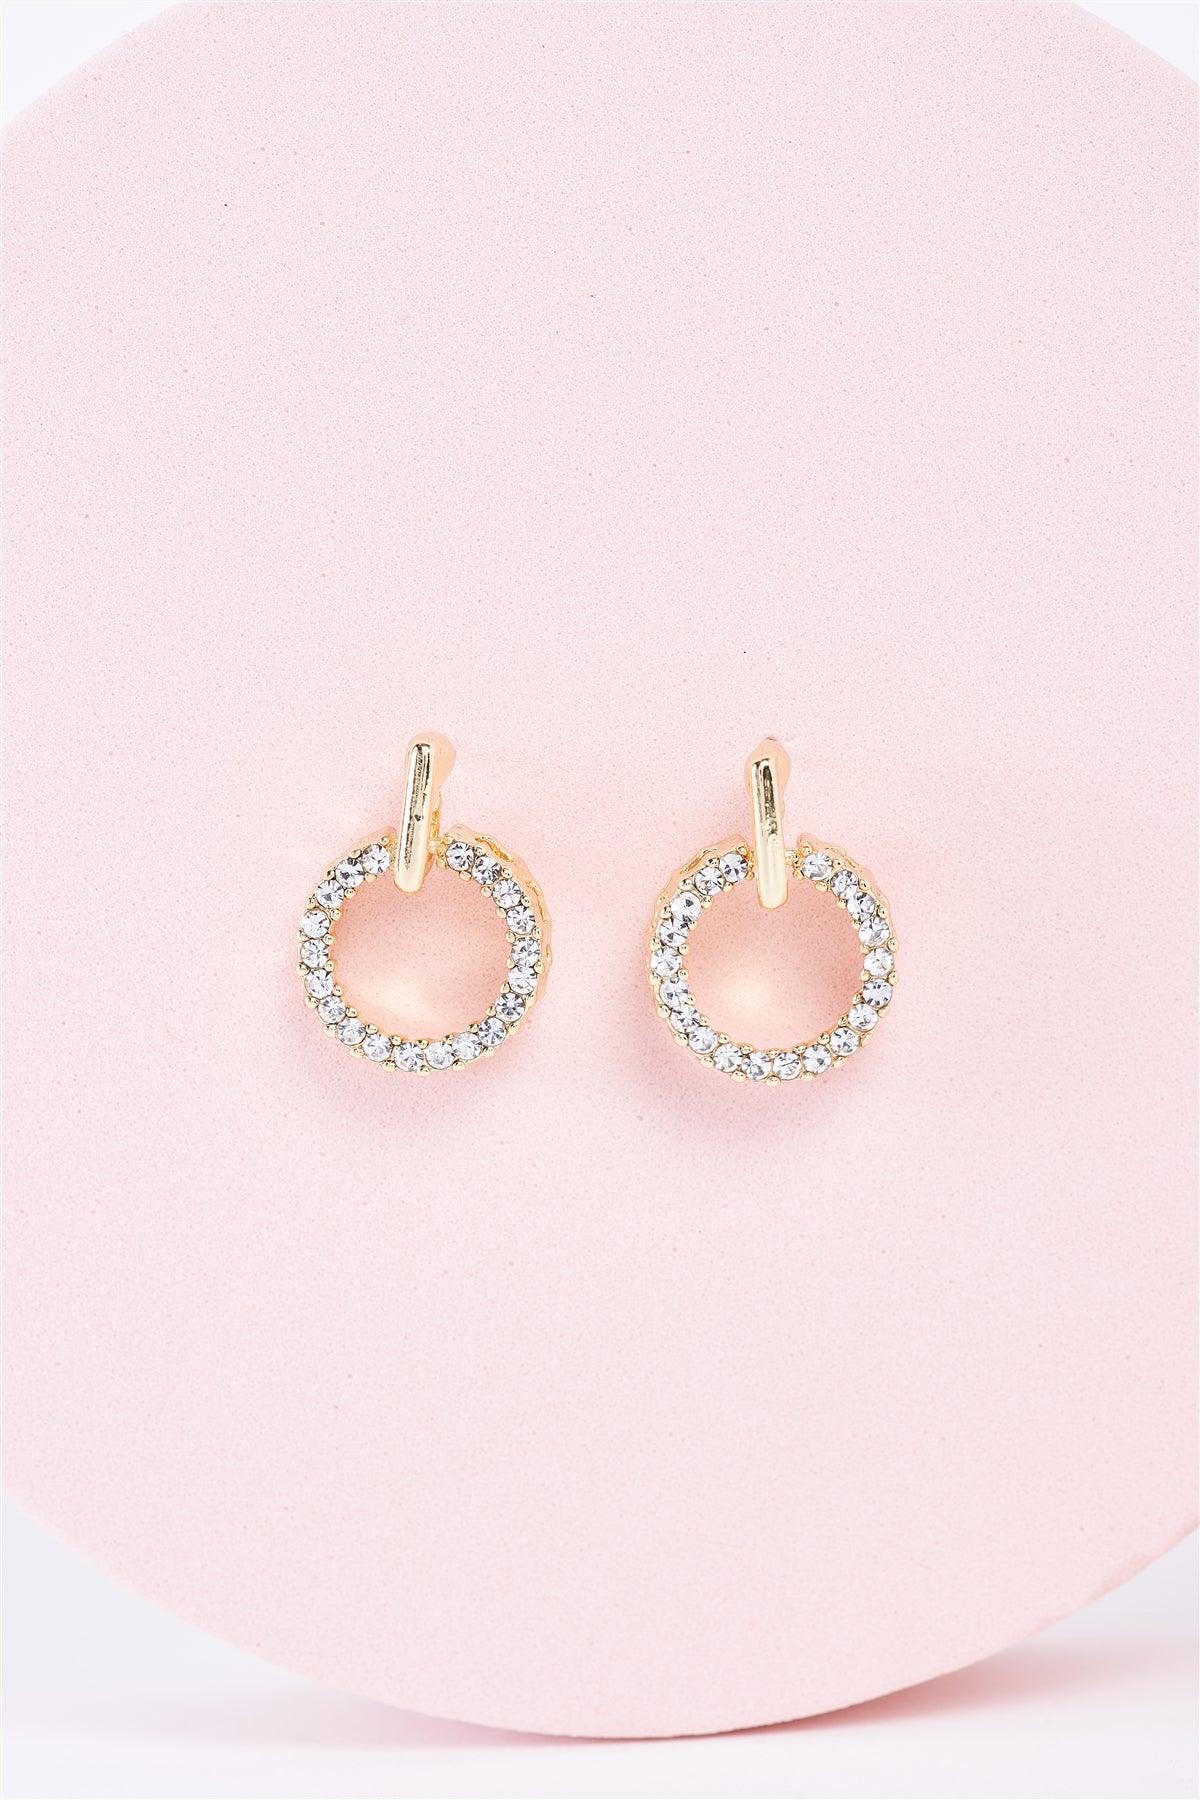 Gold Rhinestone Circle Mini Drop Earrings / 3 Pairs